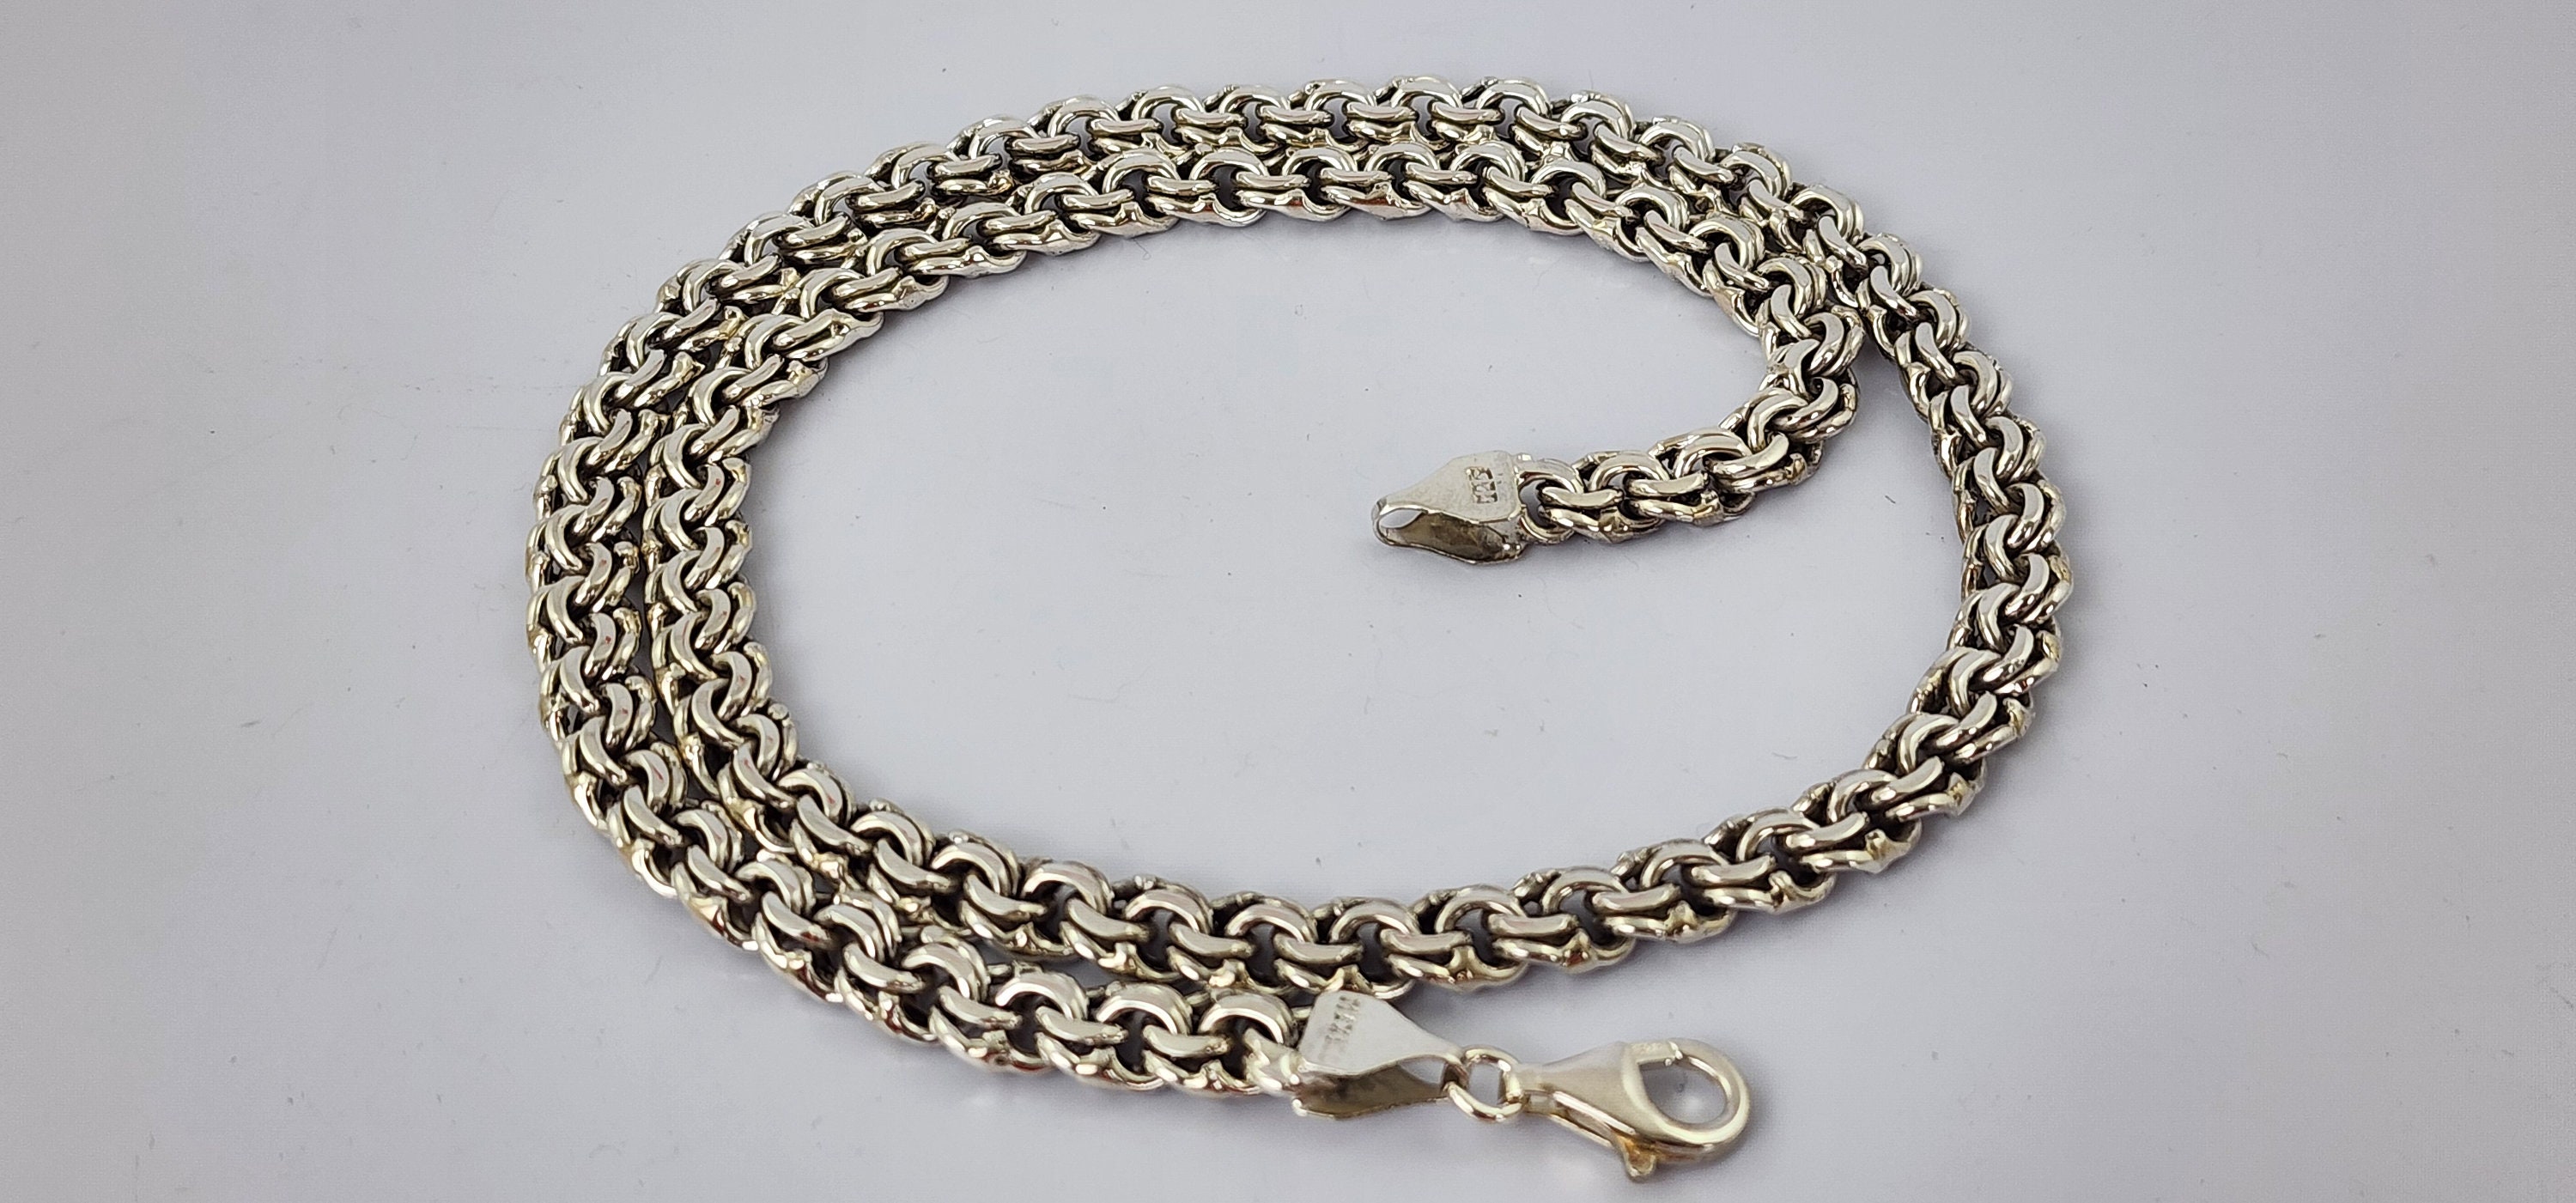 Necklaces of Mexican Silver certified .925 – Prata Joyería